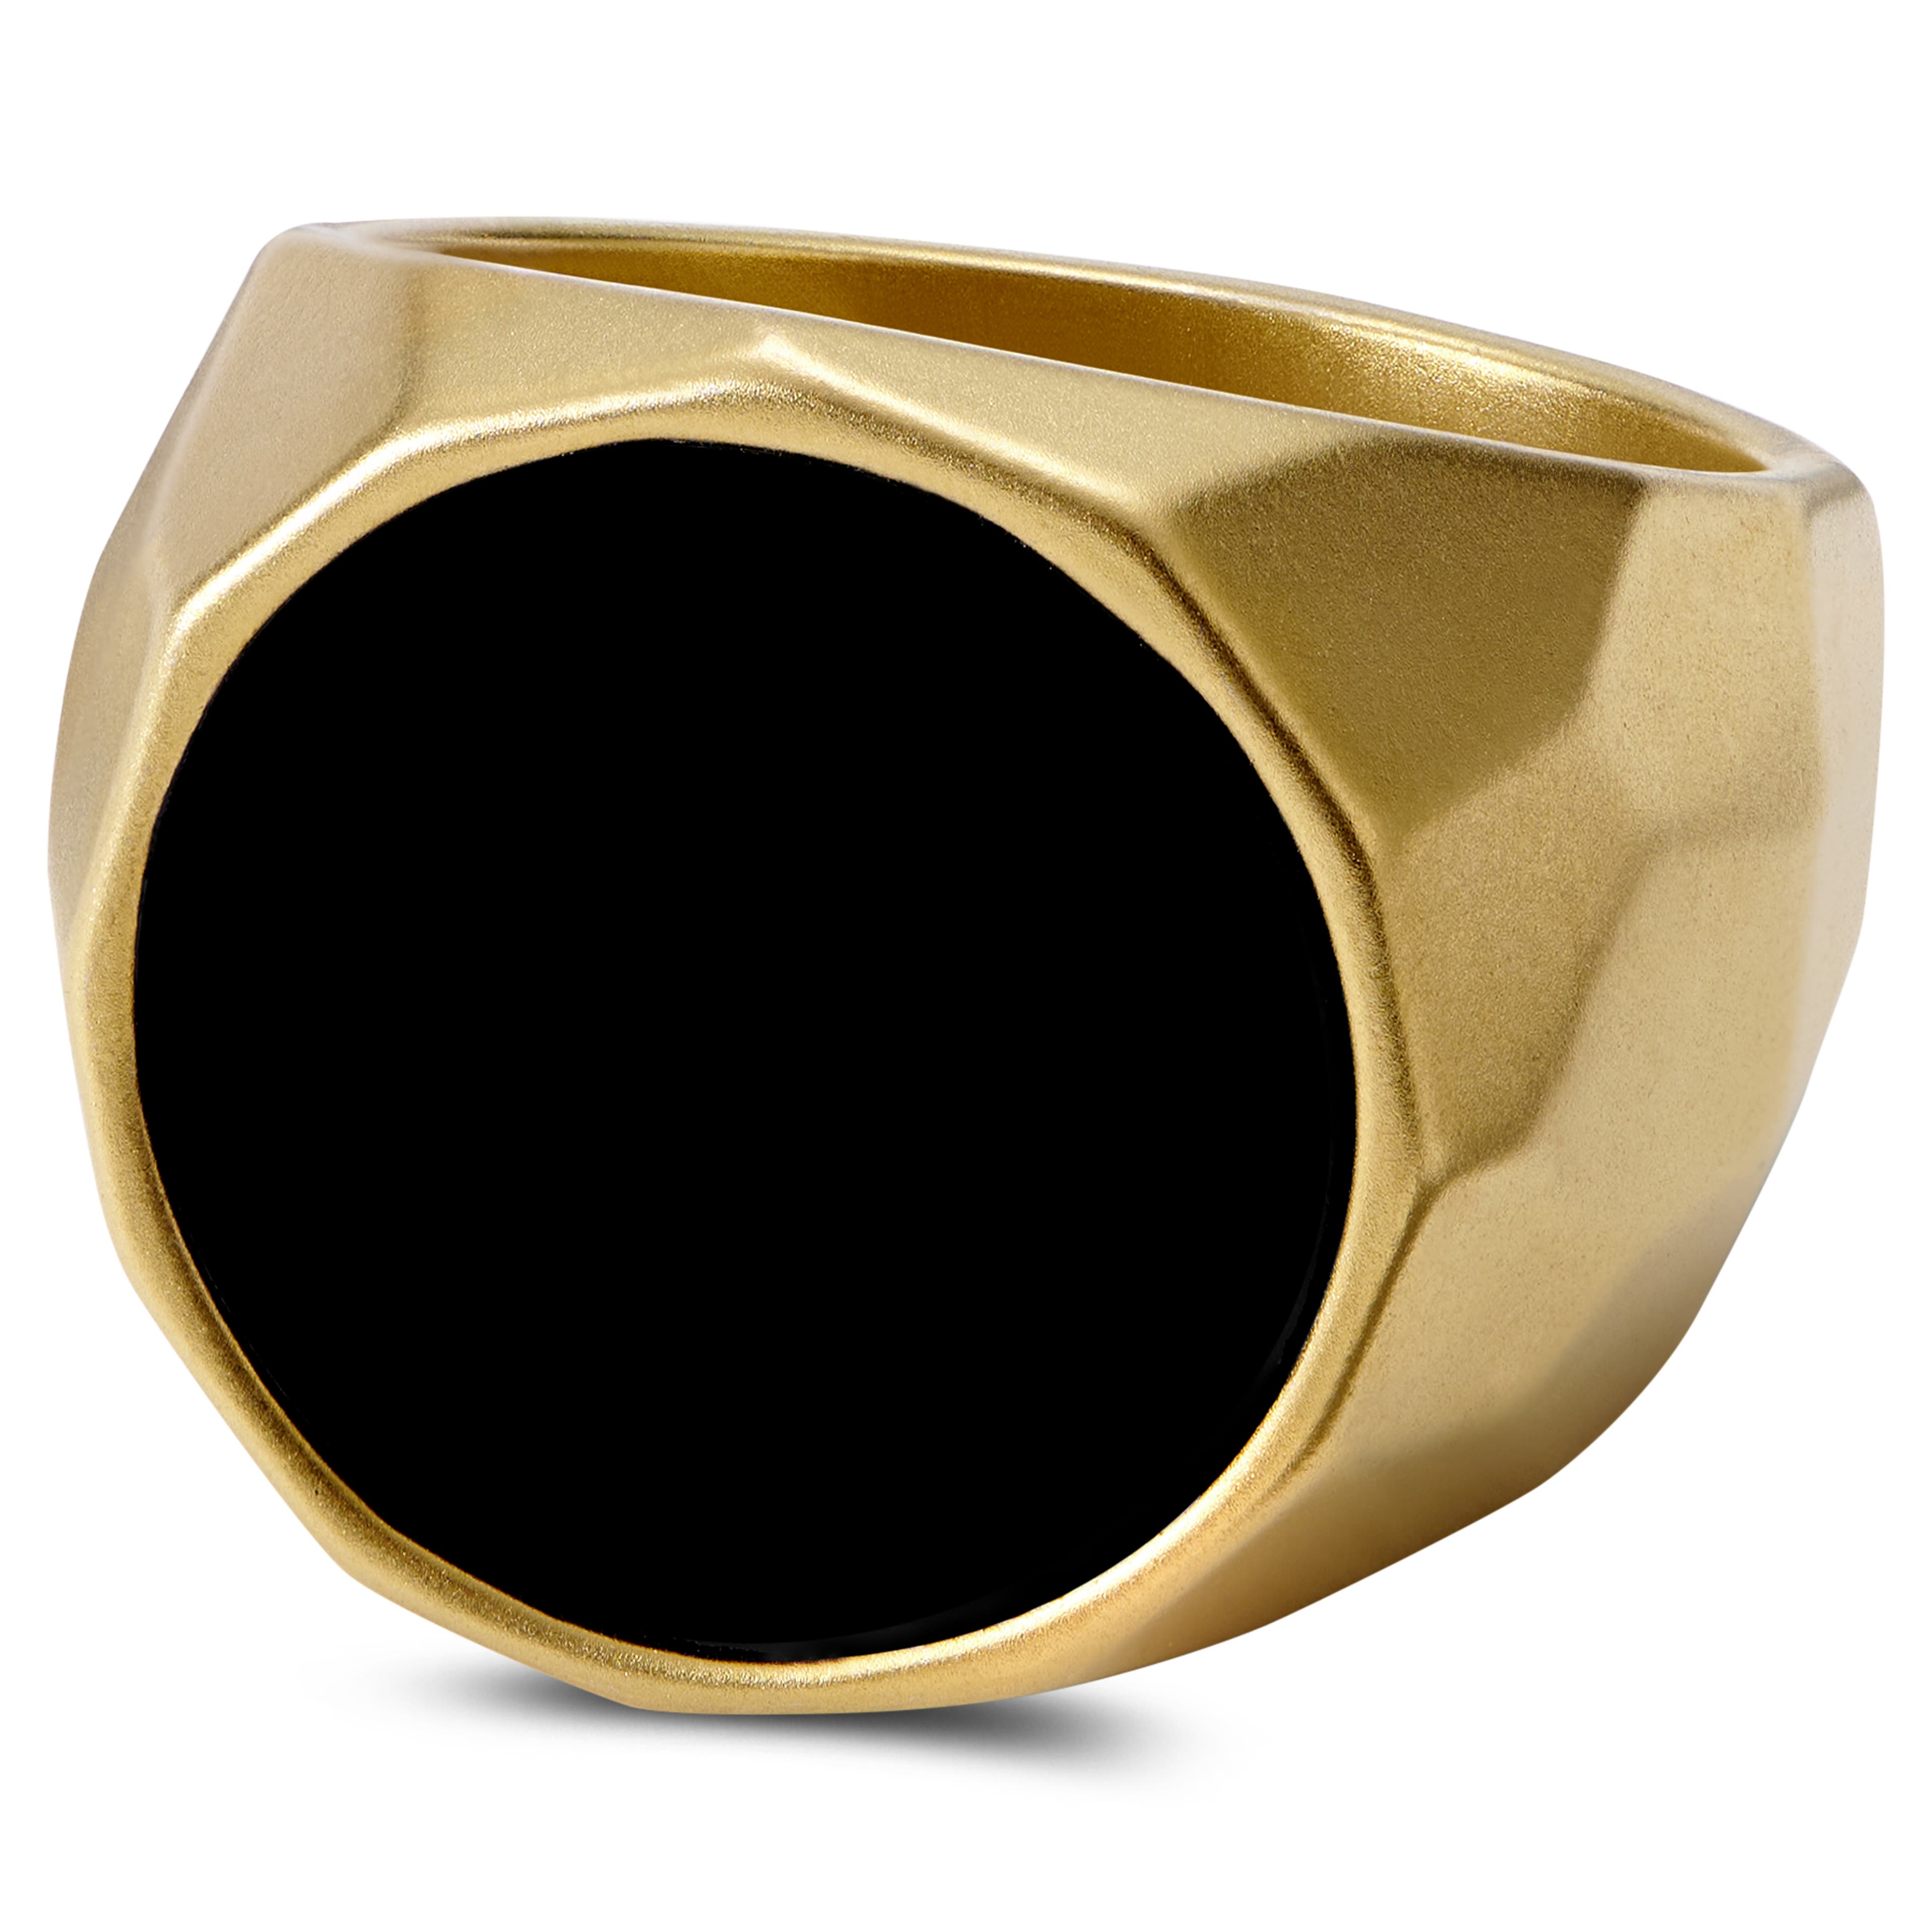 Jax ocelový pečetní prsten s černým kamenem zlaté barvy